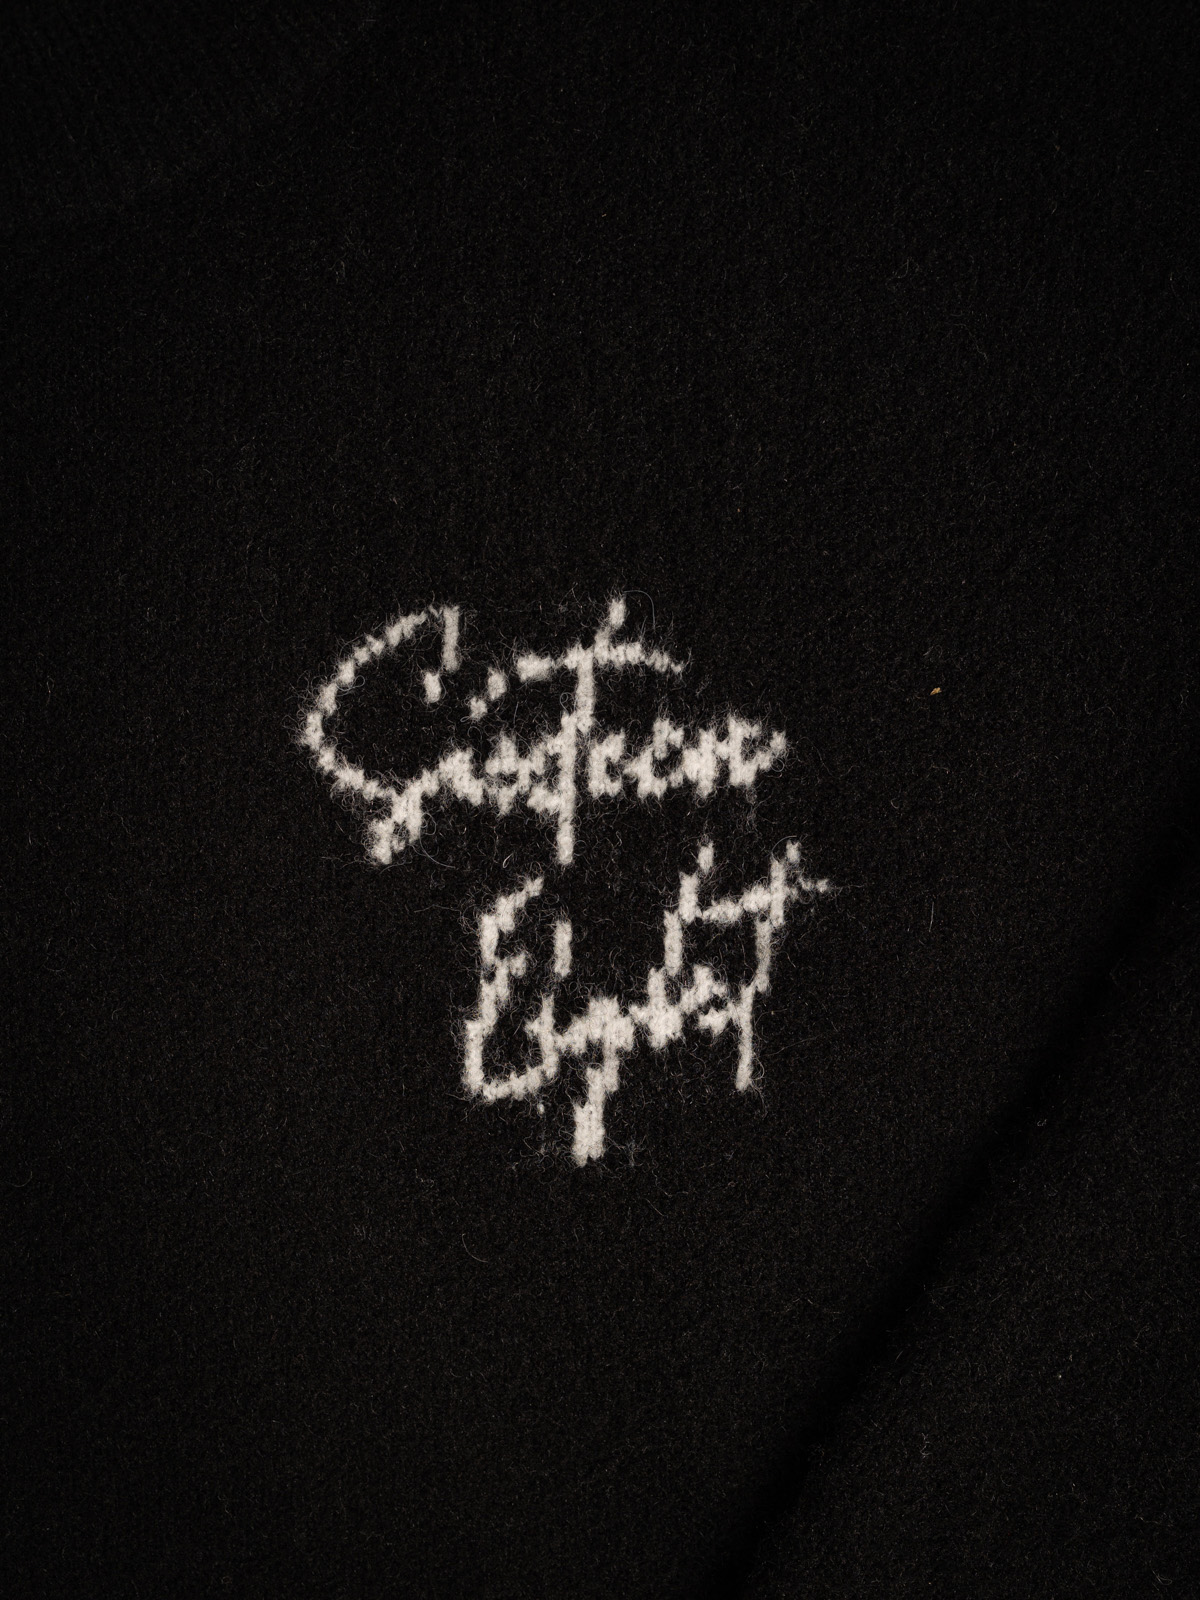 Black Signature Sweater 1608 WEAR